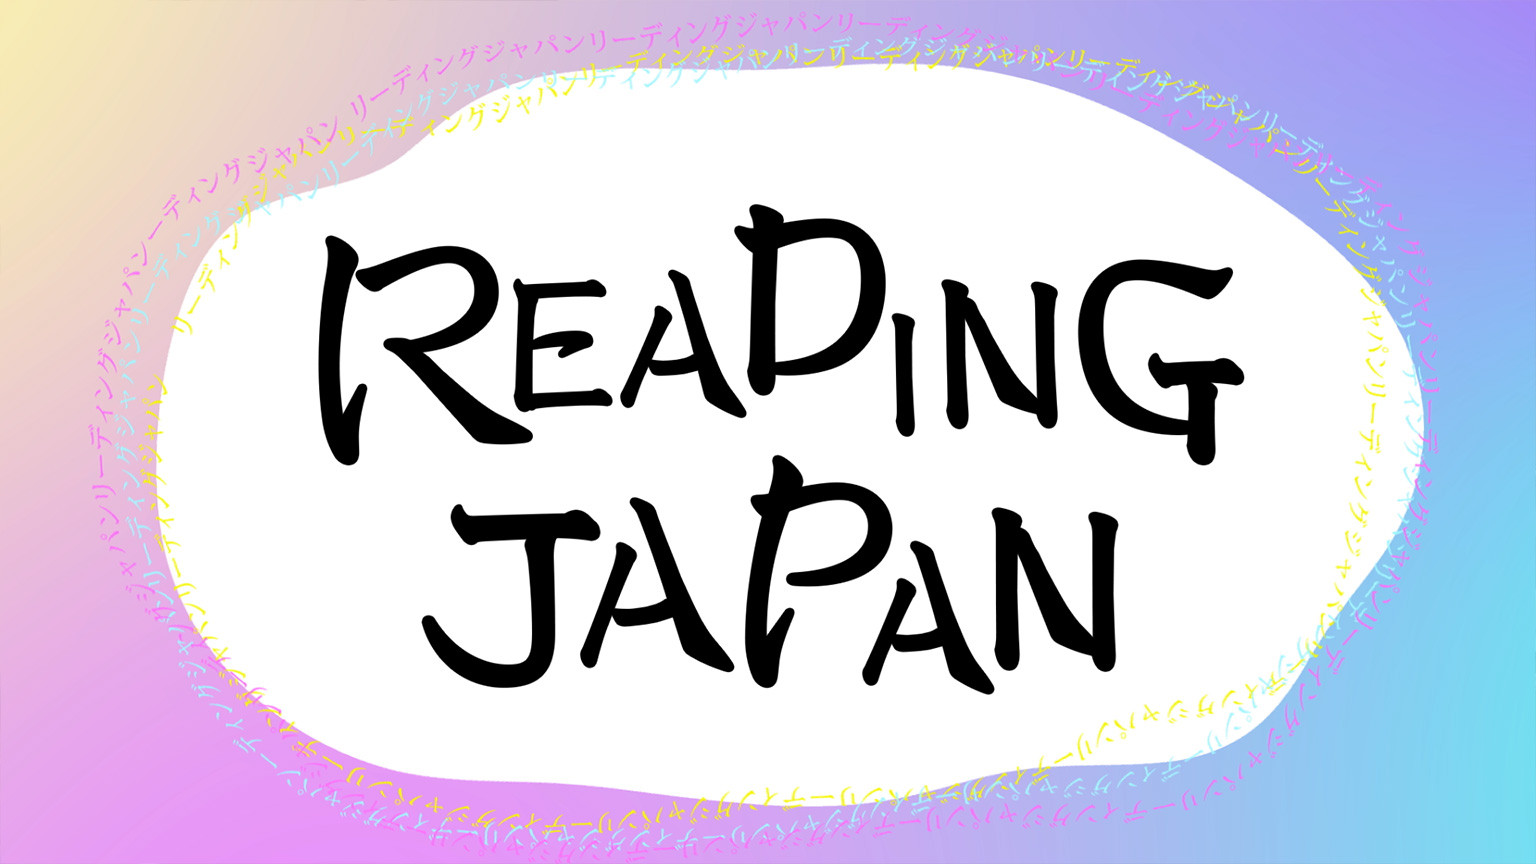 Lire le Japon
Reading Japan